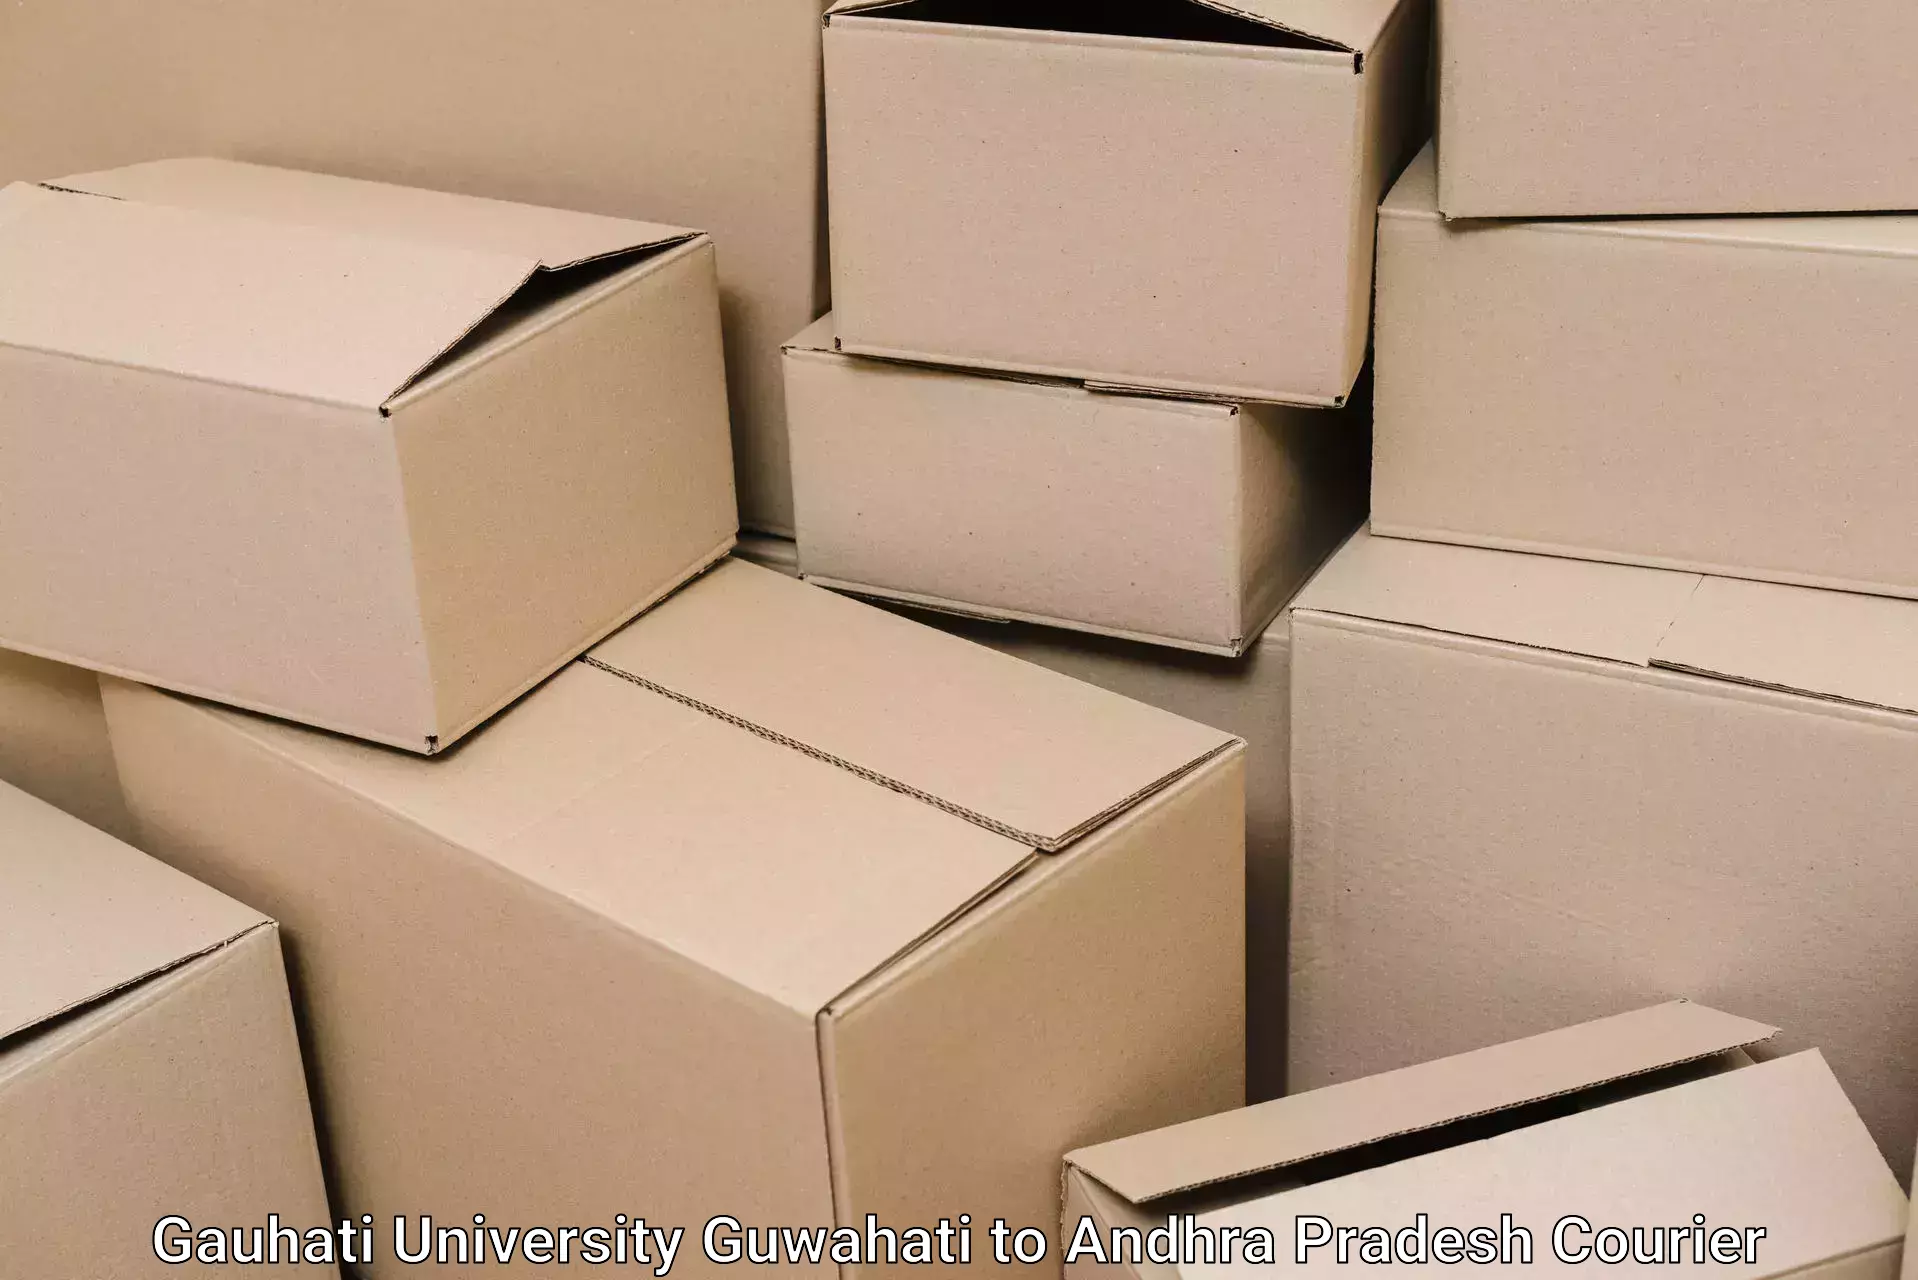 Packing and moving services Gauhati University Guwahati to Yerravaram